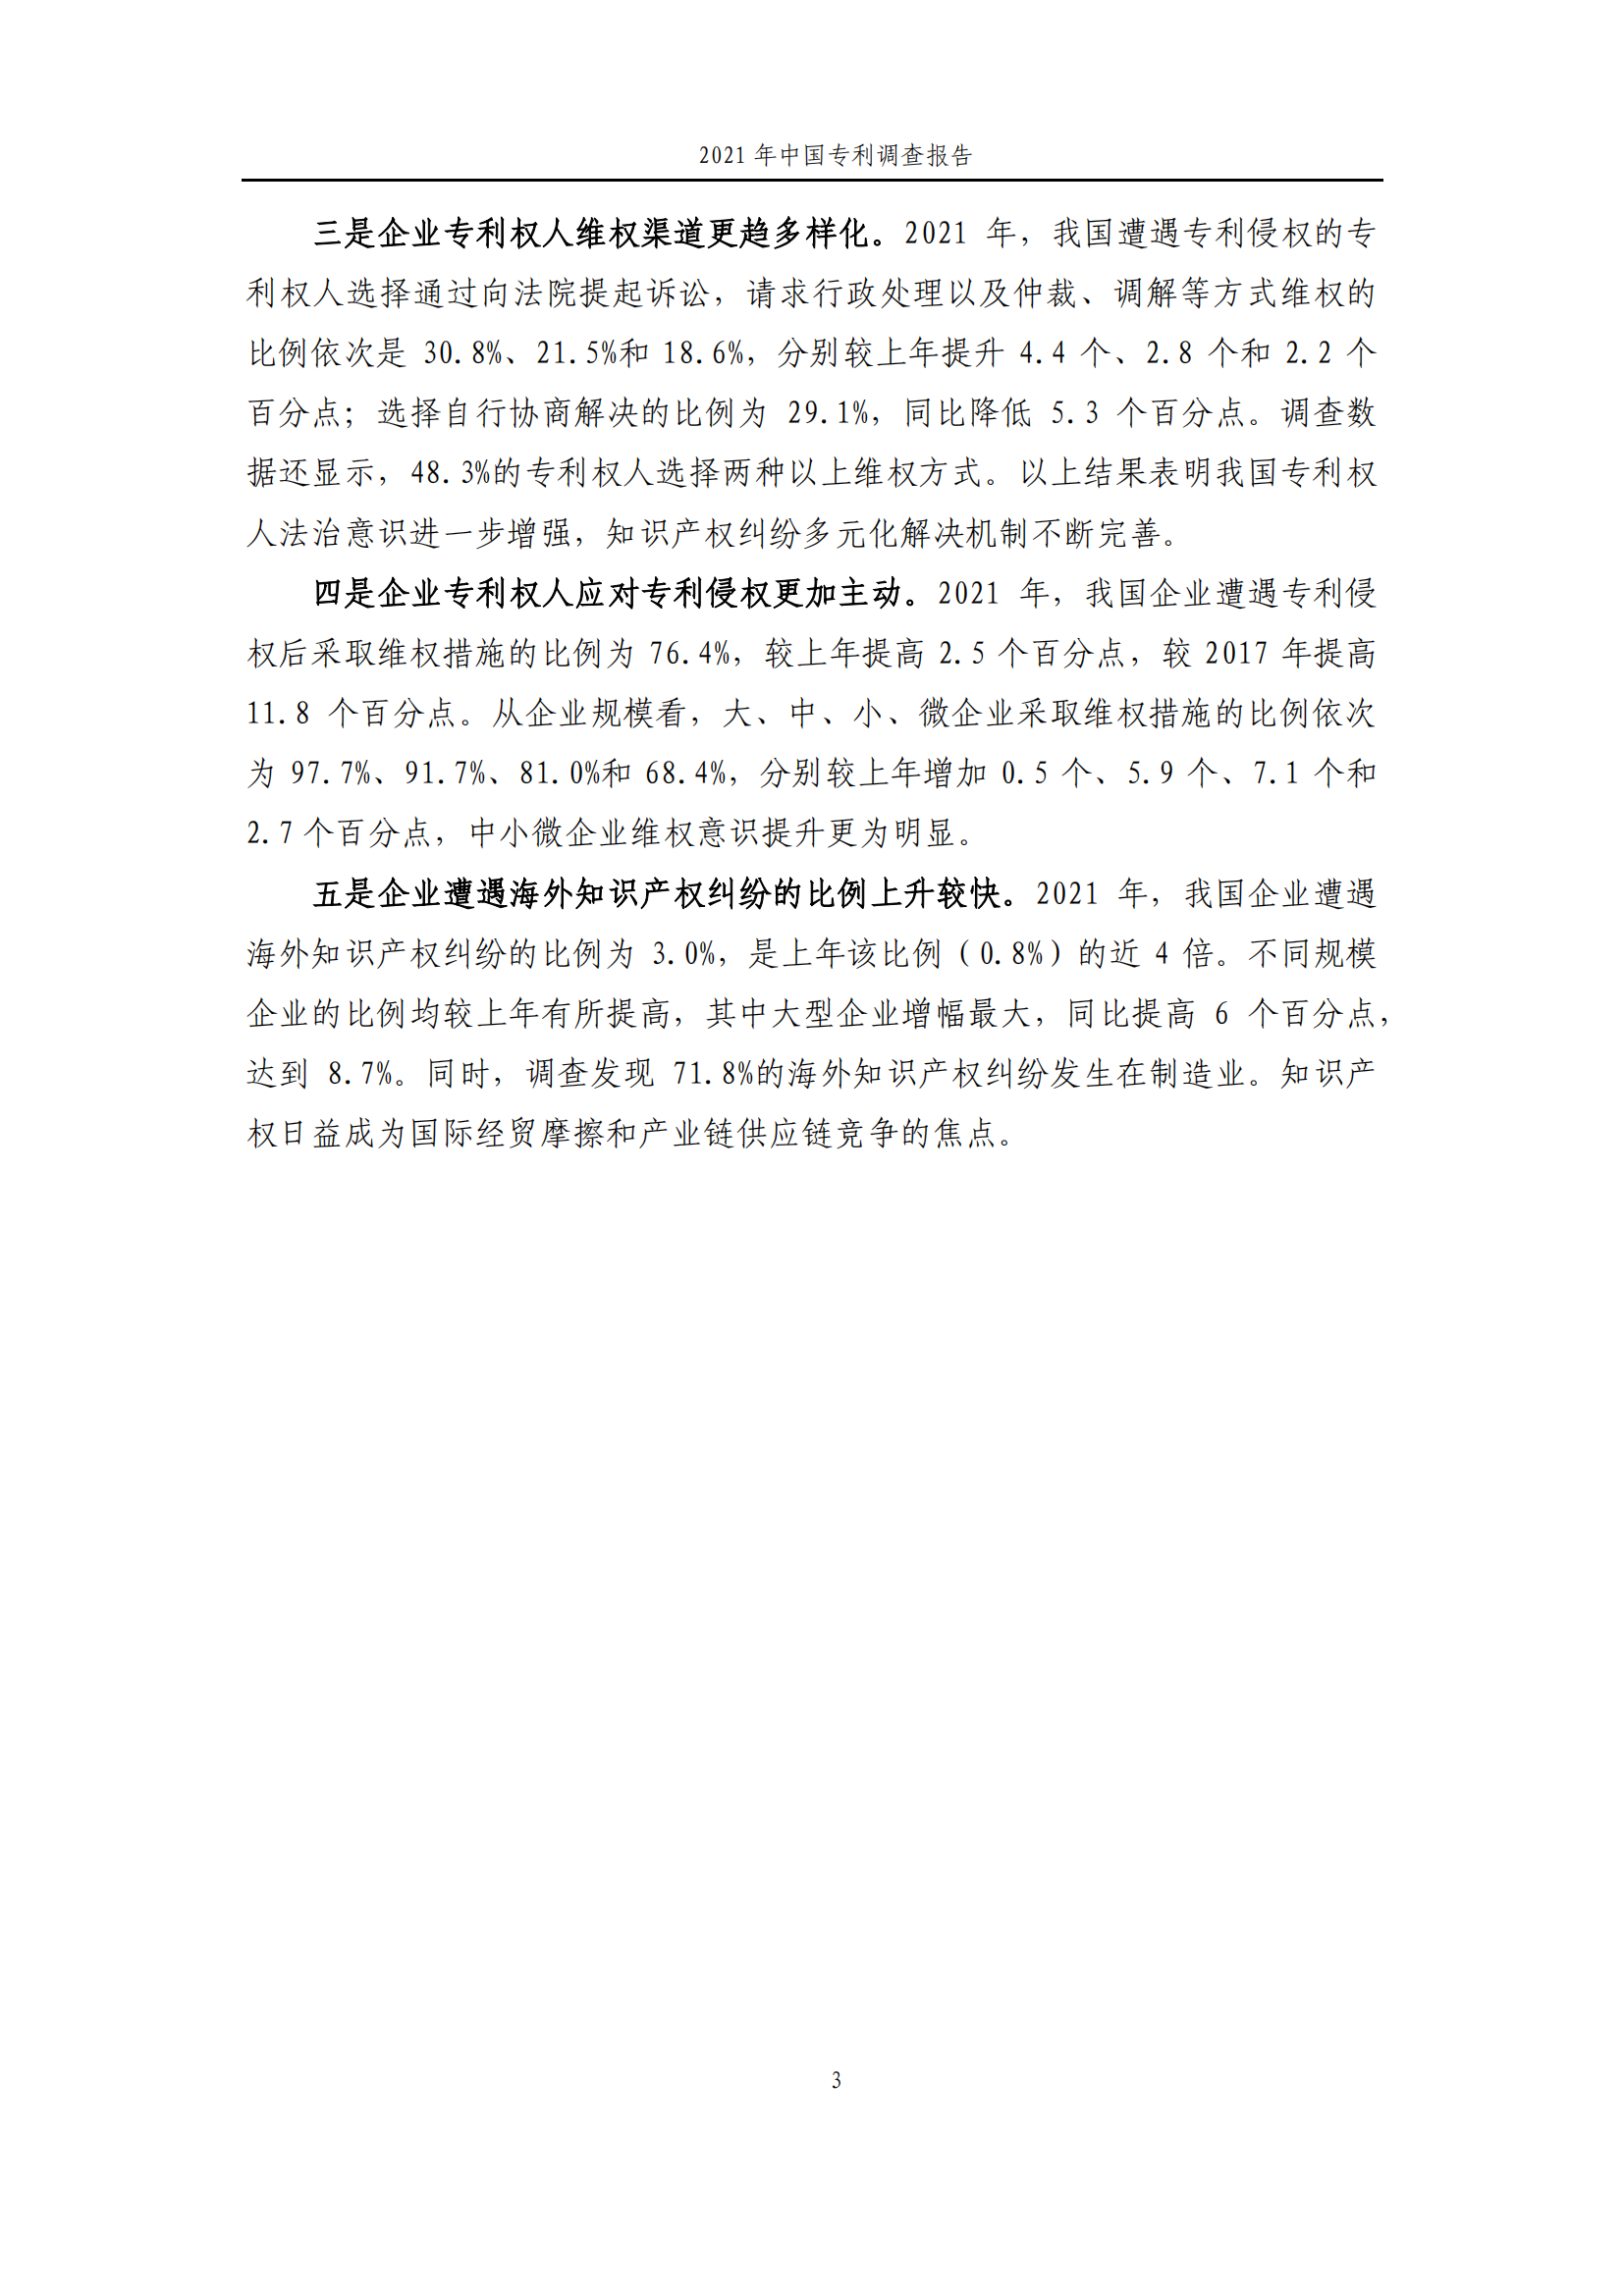 国知局发布《2021年中国专利调查报告》全文！